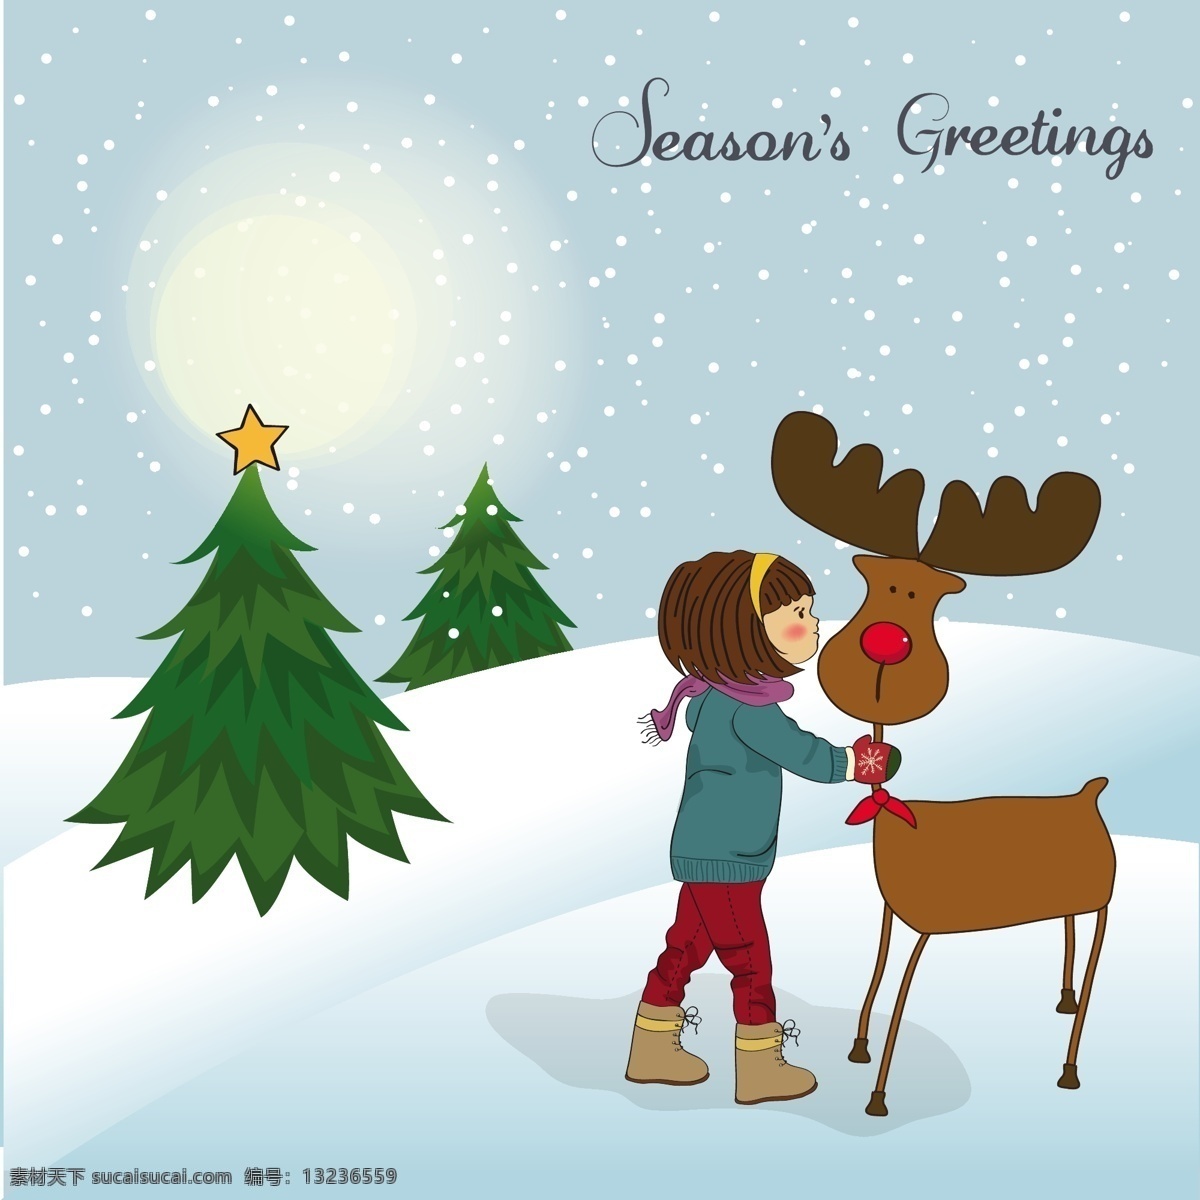 圣诞卡 可爱 小女孩 抚摸 驯鹿 自然 动物 雪 冬天 可爱的圣诞卡 圣诞 朋友 庆典 鹿 护理 冷 在一起 季节的问候 手套 可爱的动物 白色